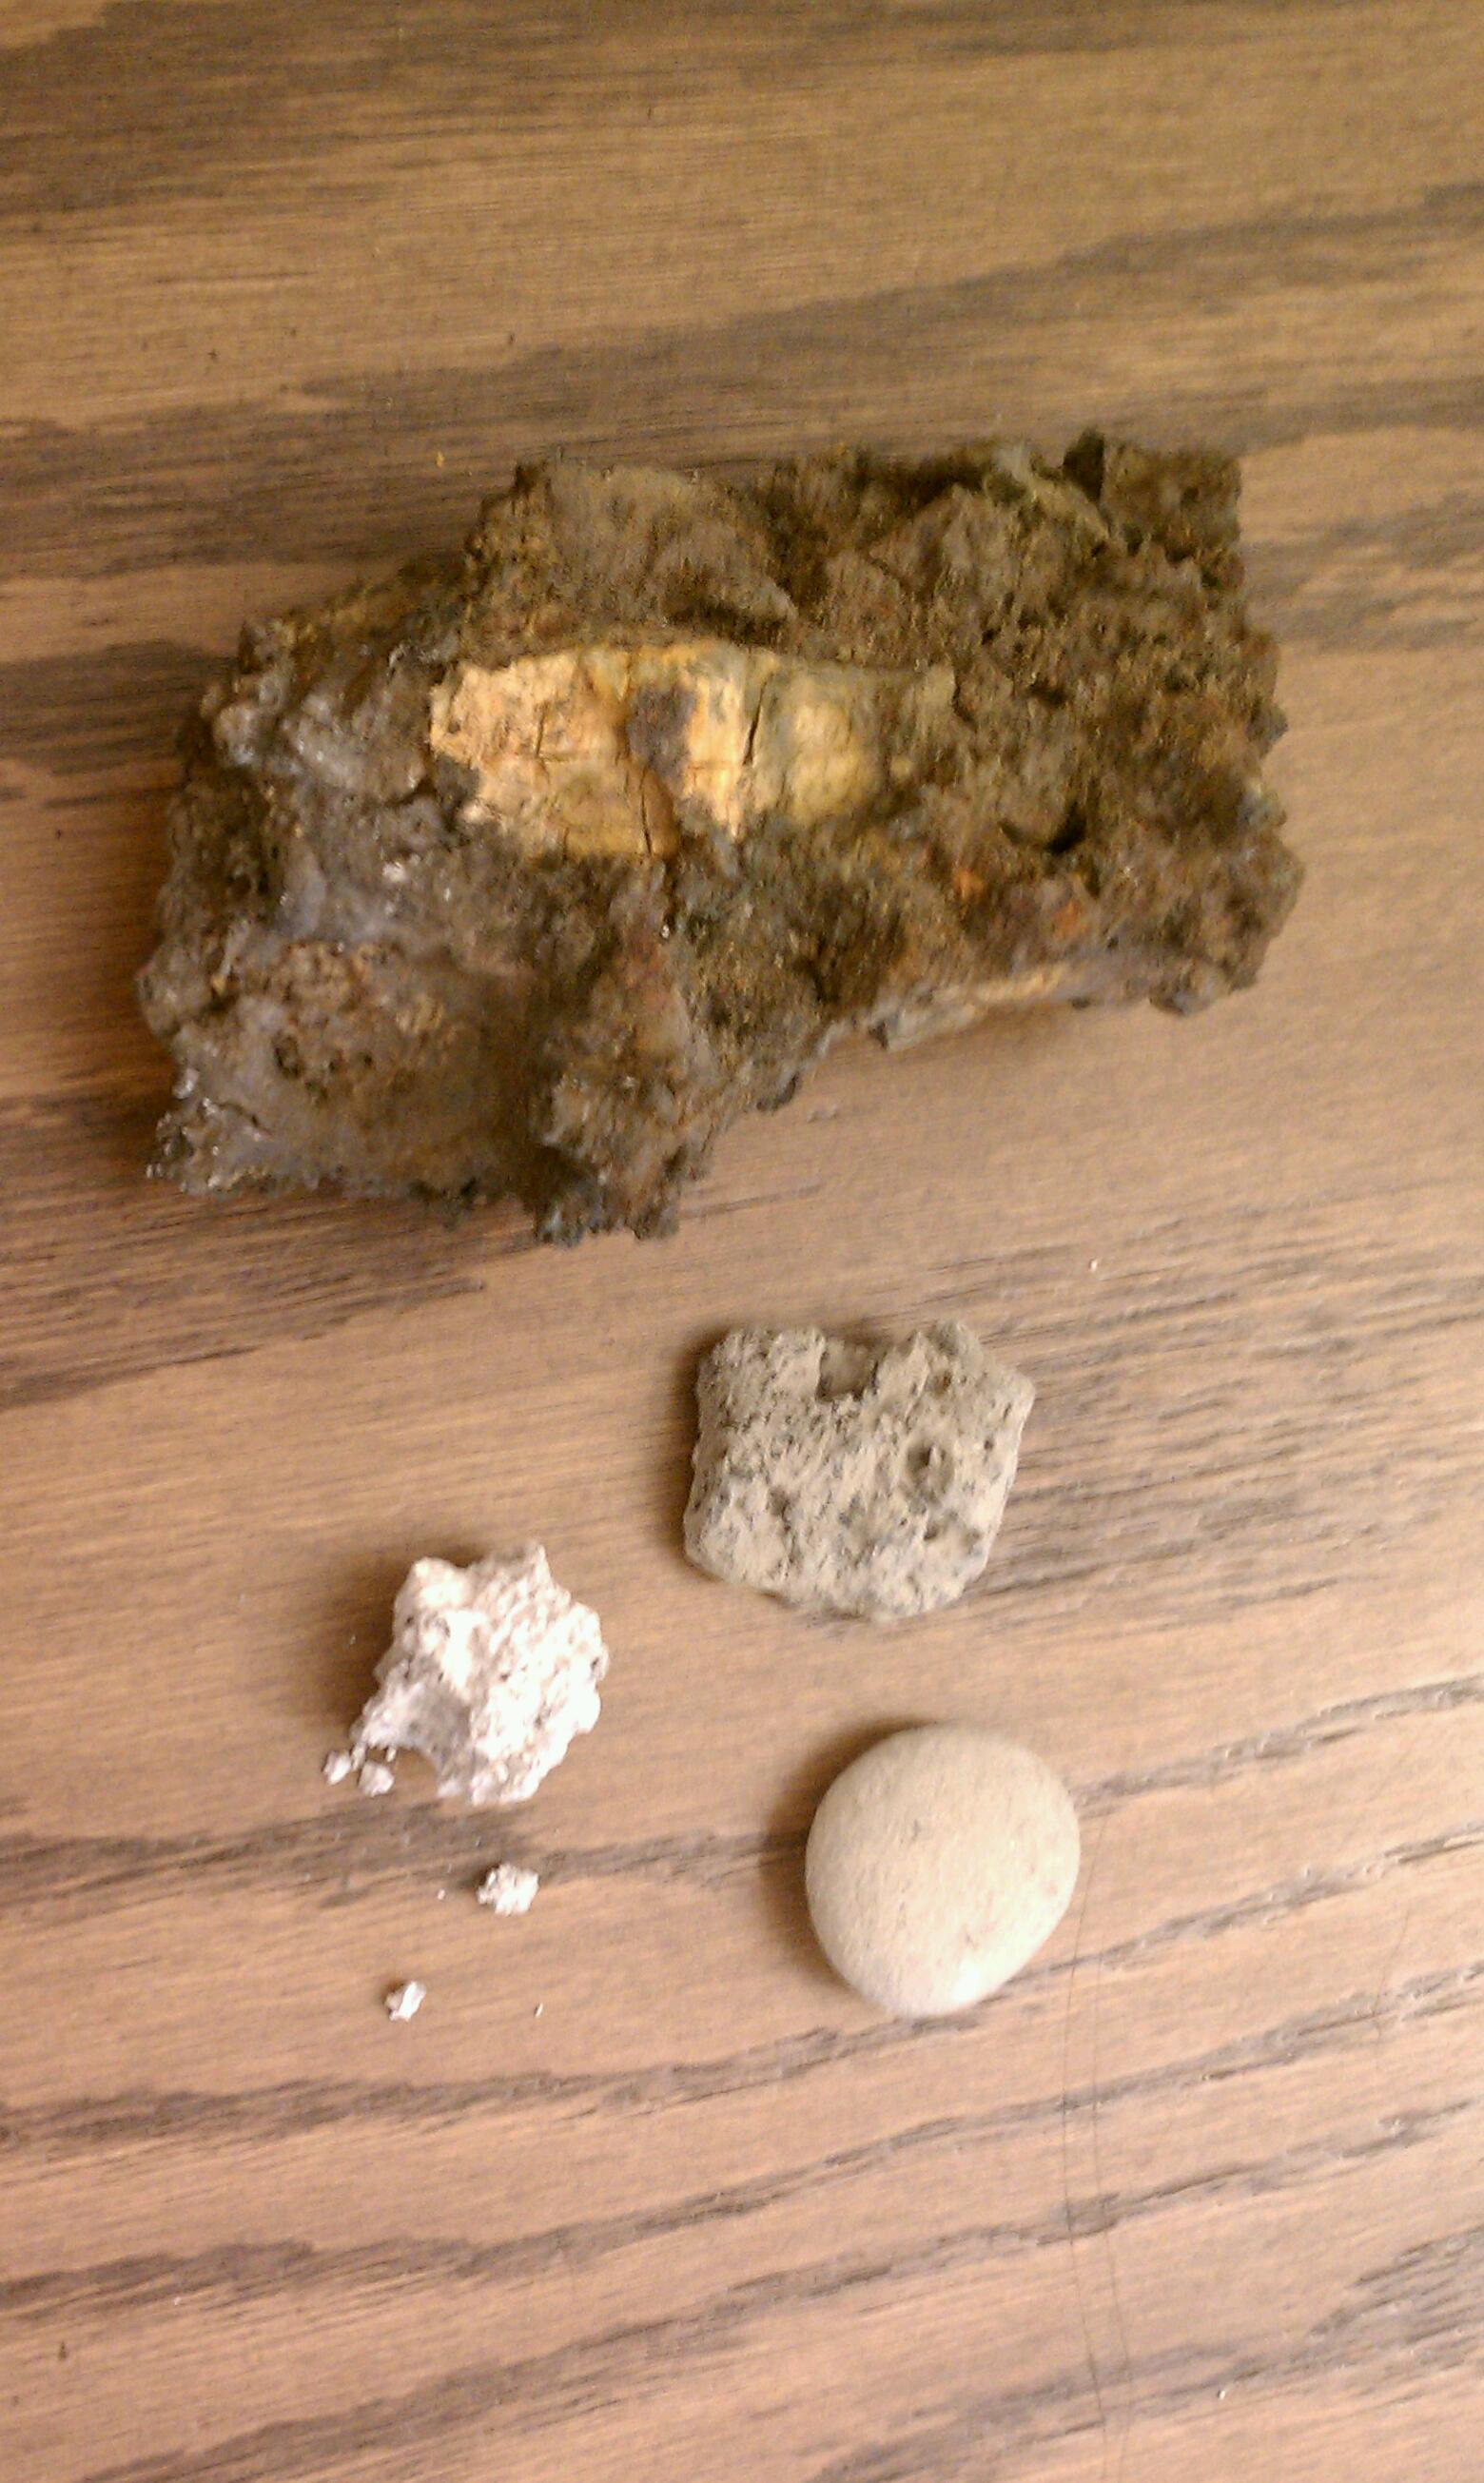 floor pic of slag and gravel.jpg